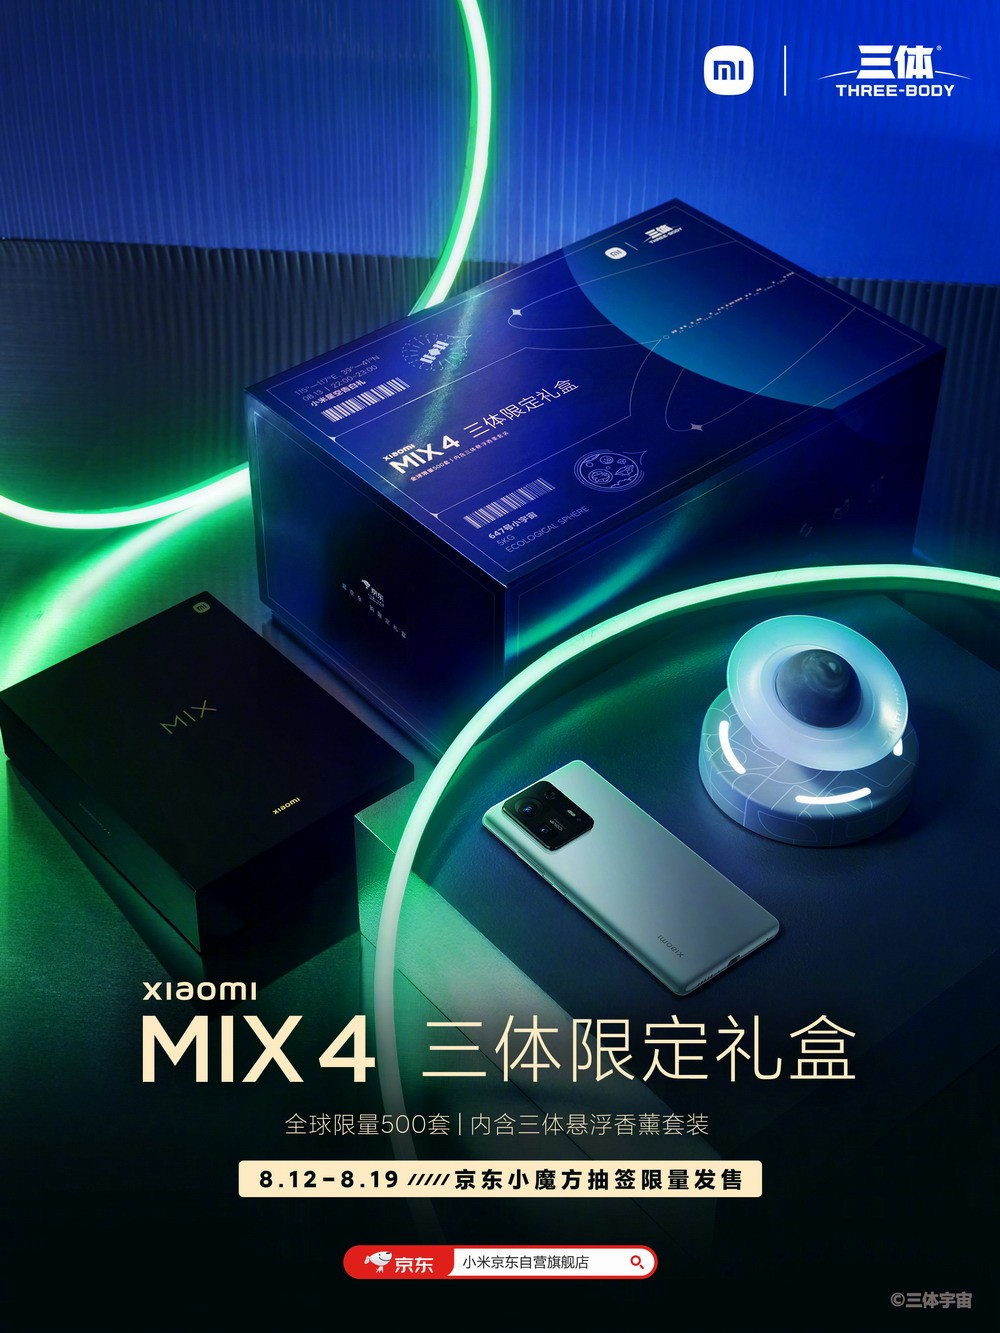 小米MIX 4三体限定礼盒售6299元 全球限量500套